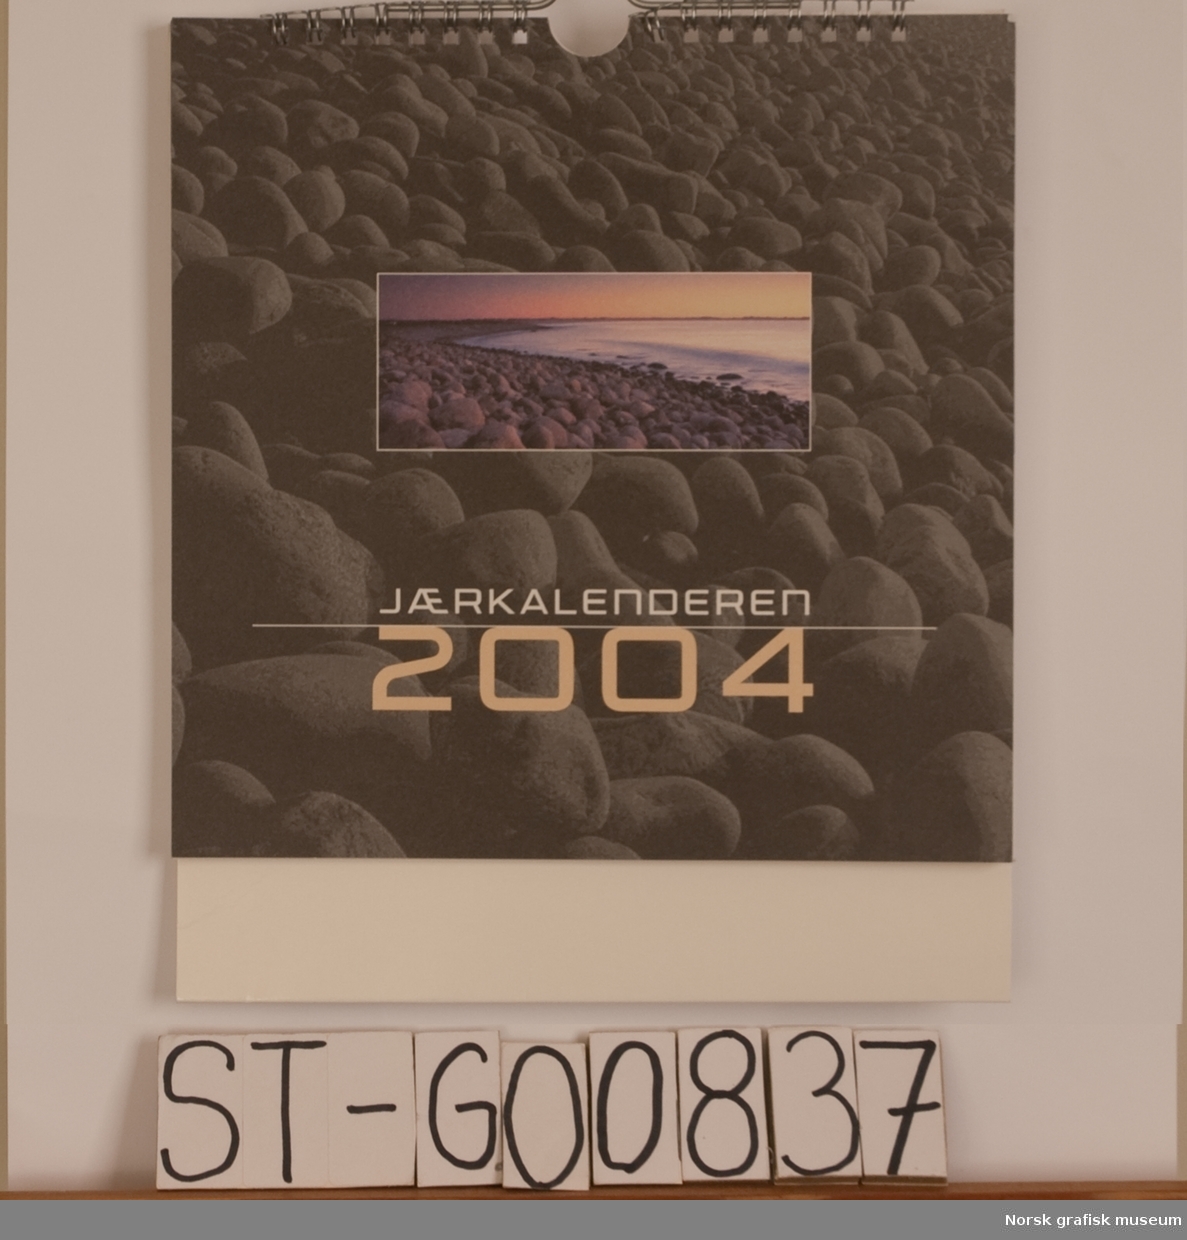 Tittel: Jærkalenderen 2004 

Bordkalender for året 2004.

Tema for kalenderen:Jærkyster

Tittelblad bildet viser svartesteiner og en landskap: Sele